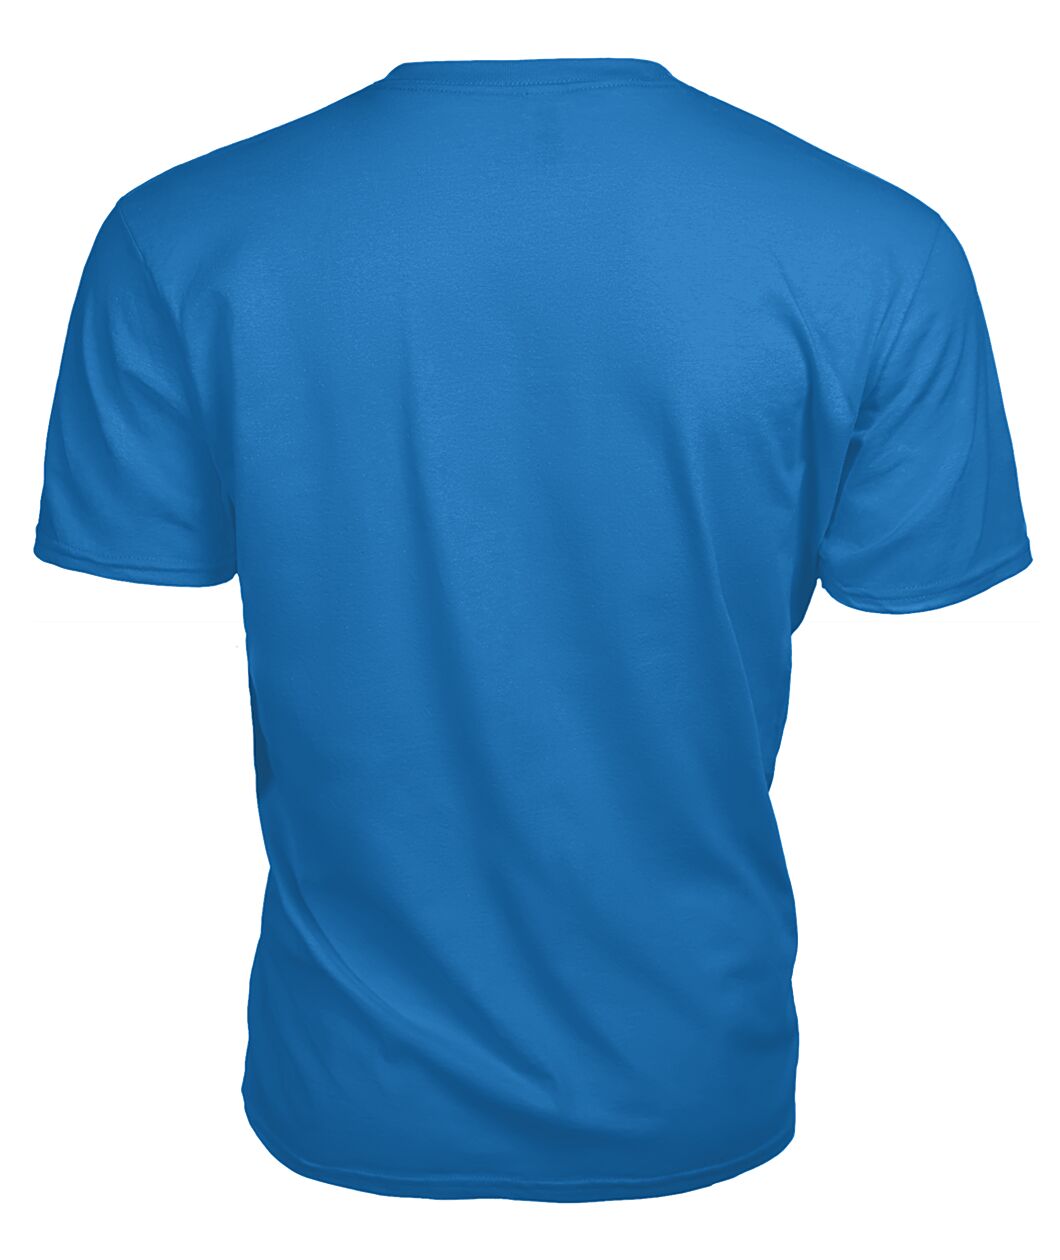 Christie Family Tartan - 2D T-shirt